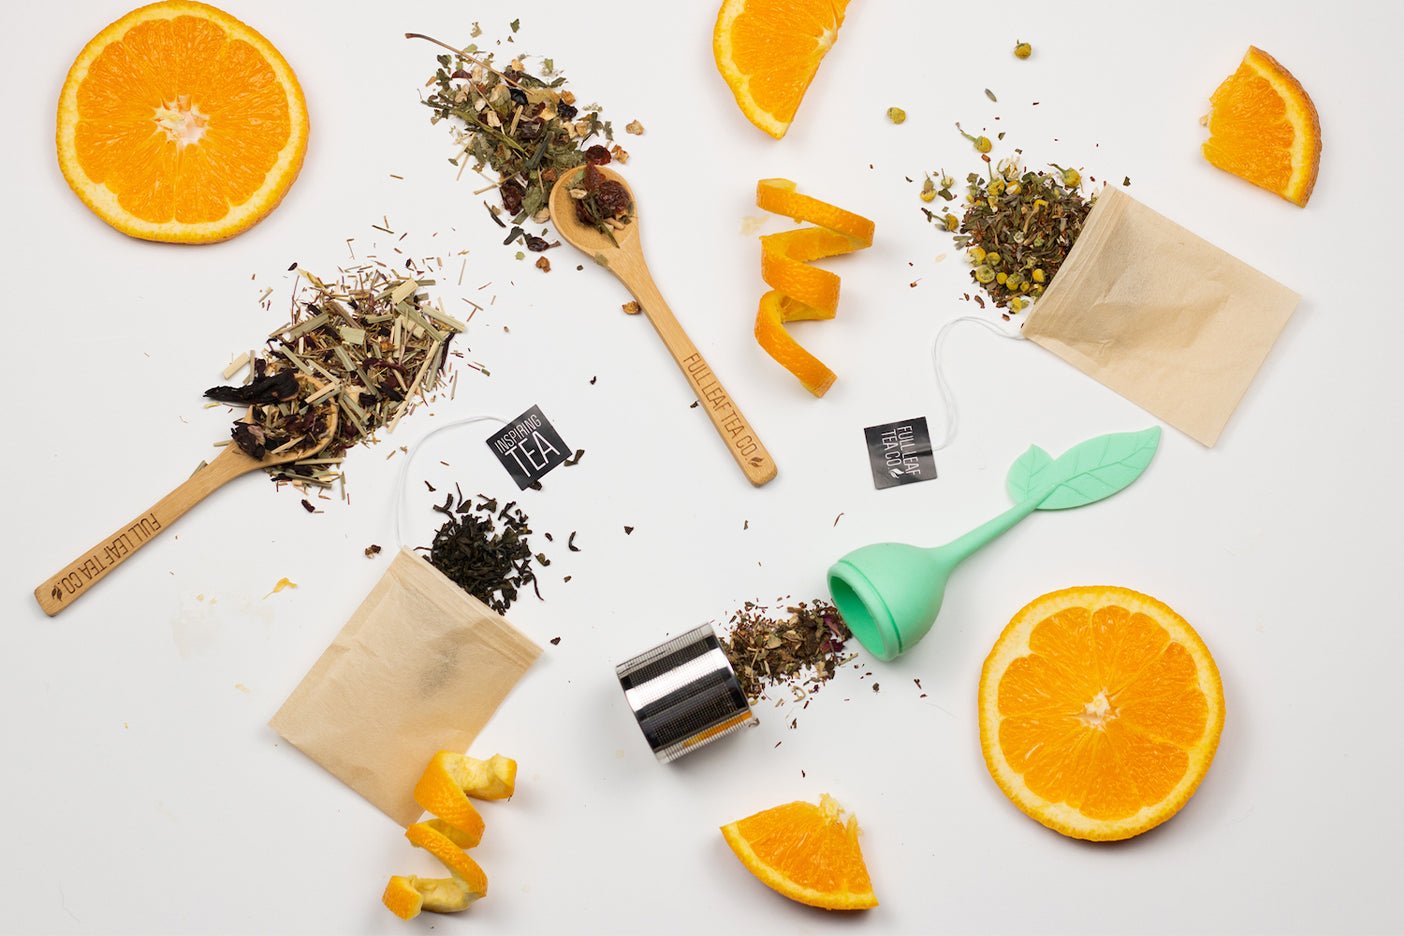 How to Make Full Leaf Tea - Full Leaf Tea Company